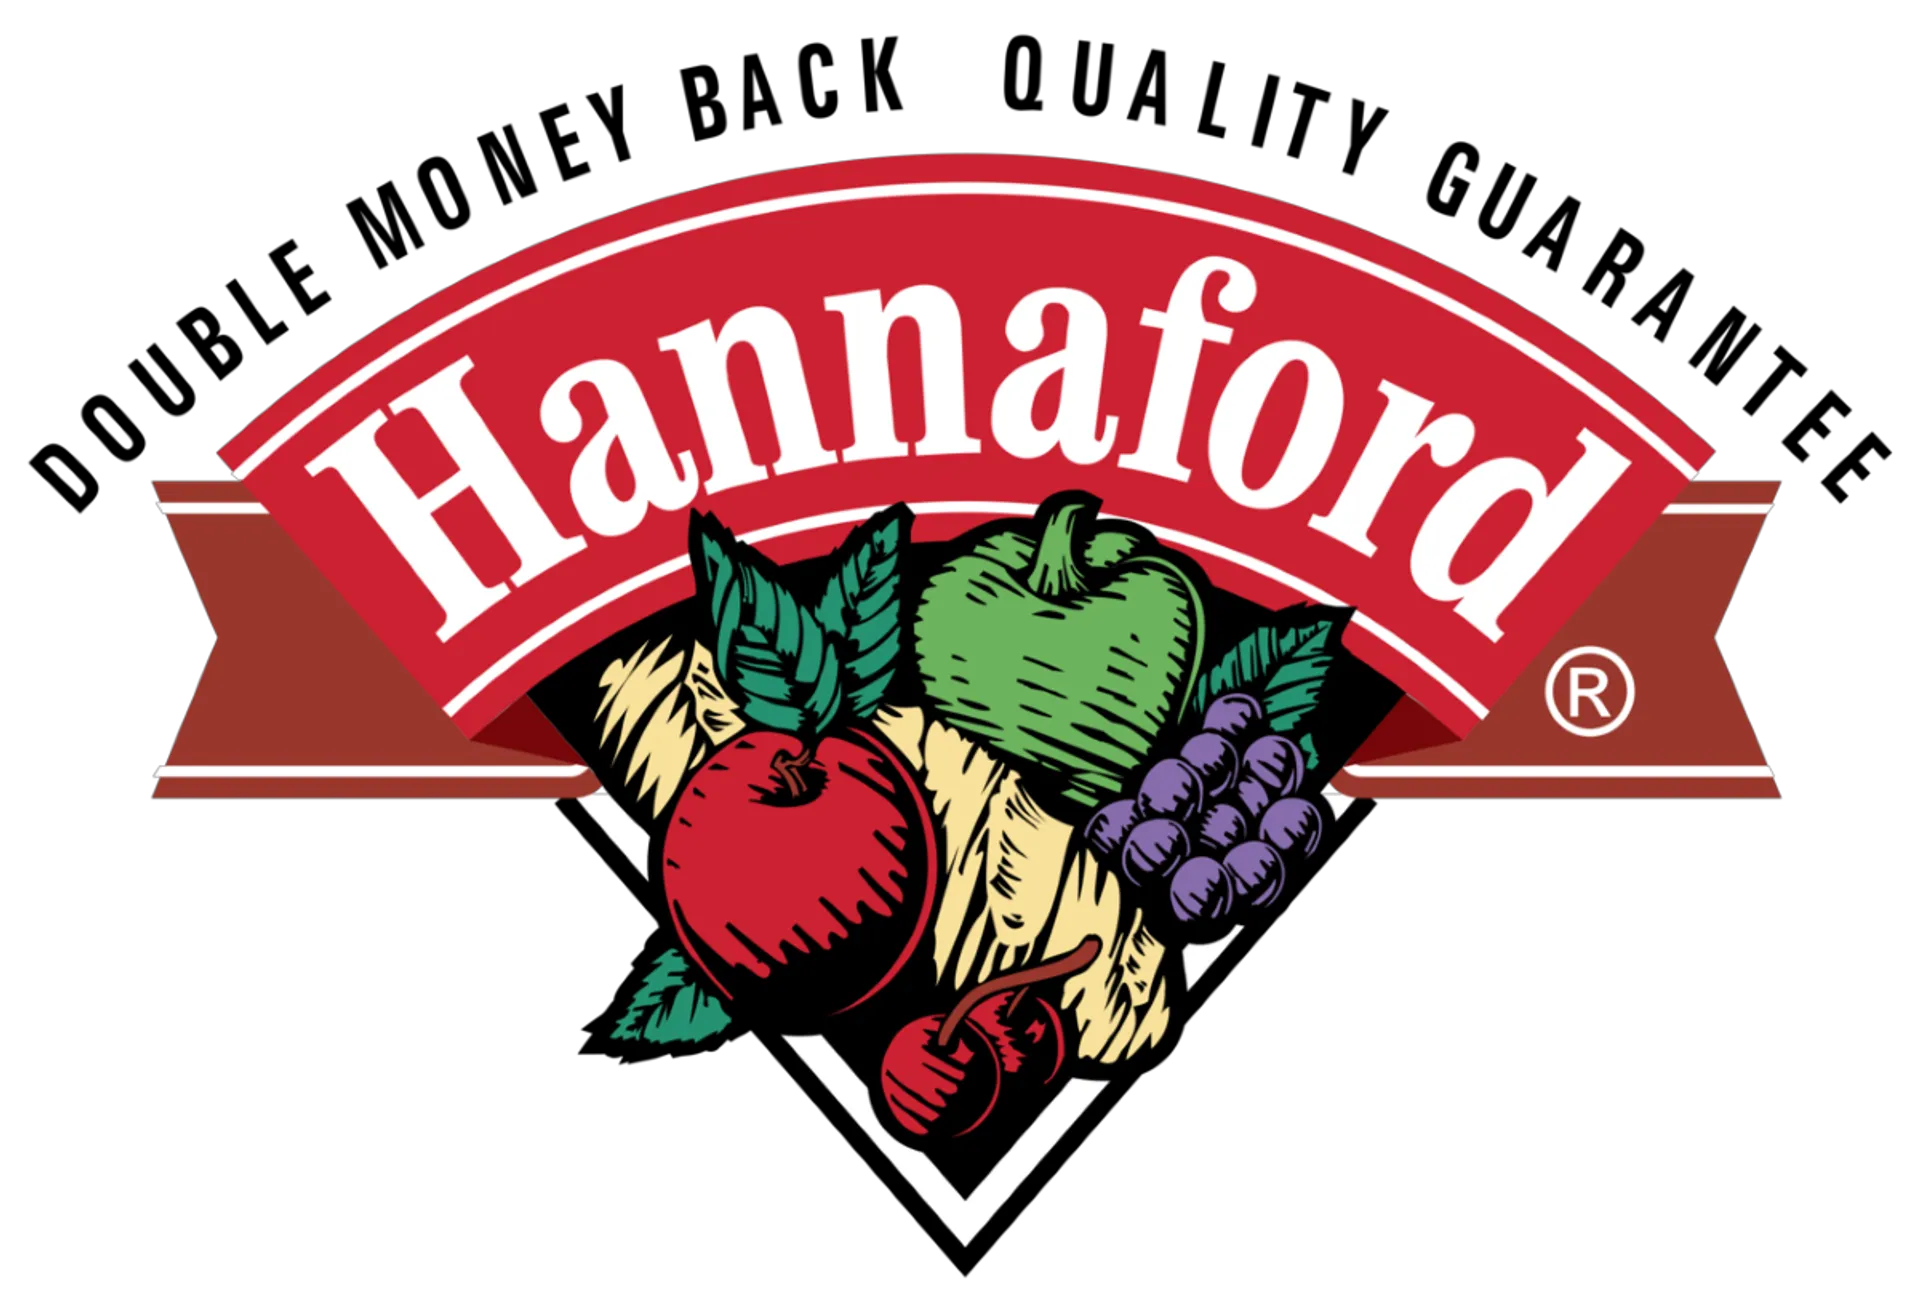 HANNAFORD logo